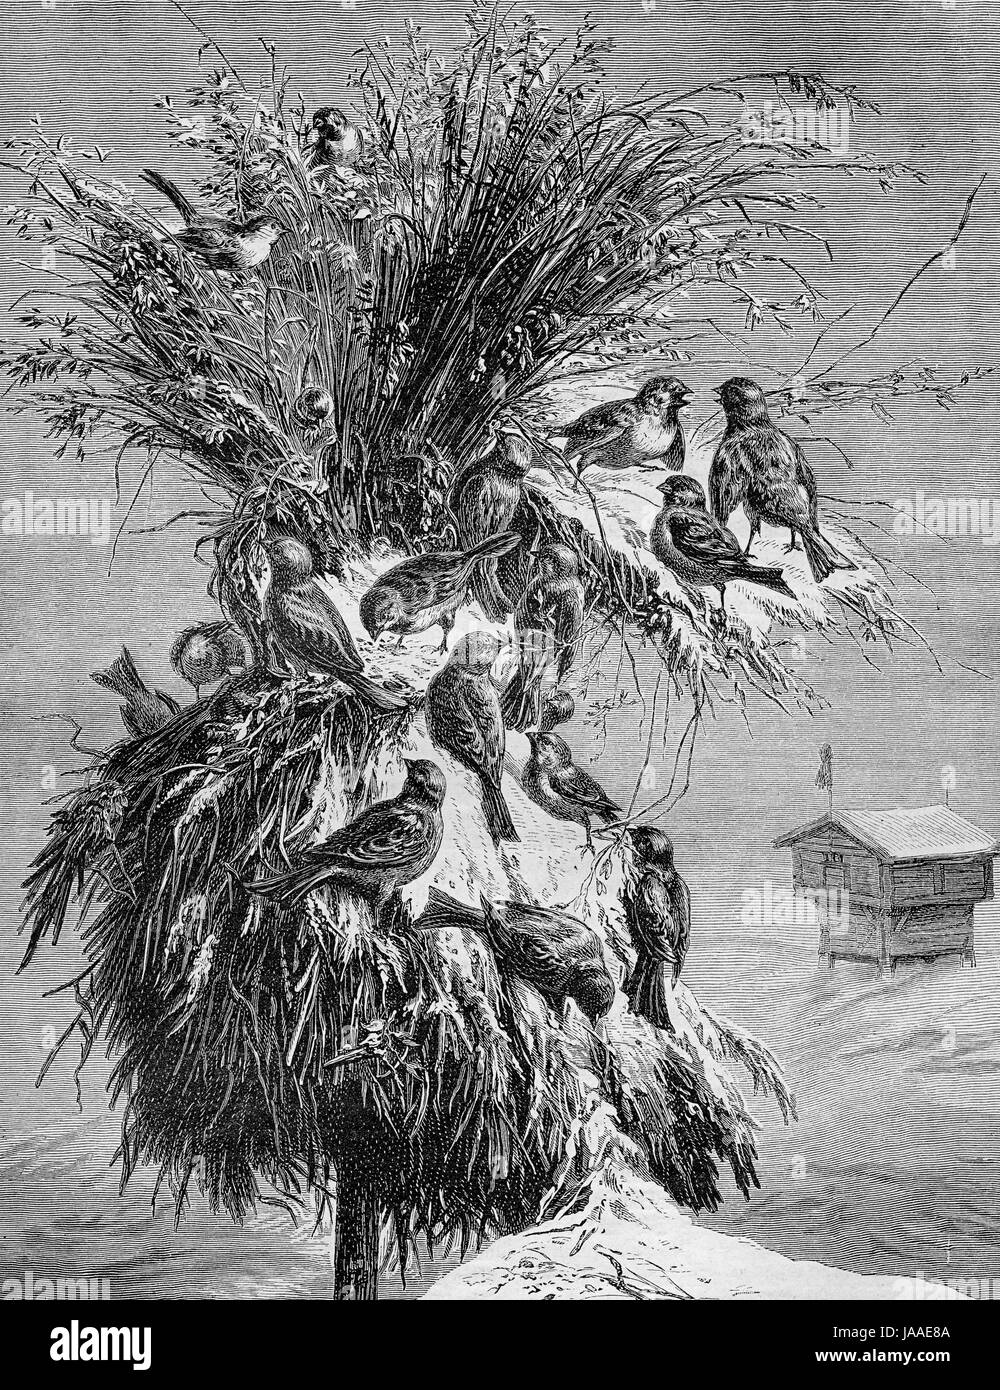 Juleneg, dem norwegischen Weihnachtsbaum für Vögel - Gravur aus XIX Jahrhundert Stockfoto